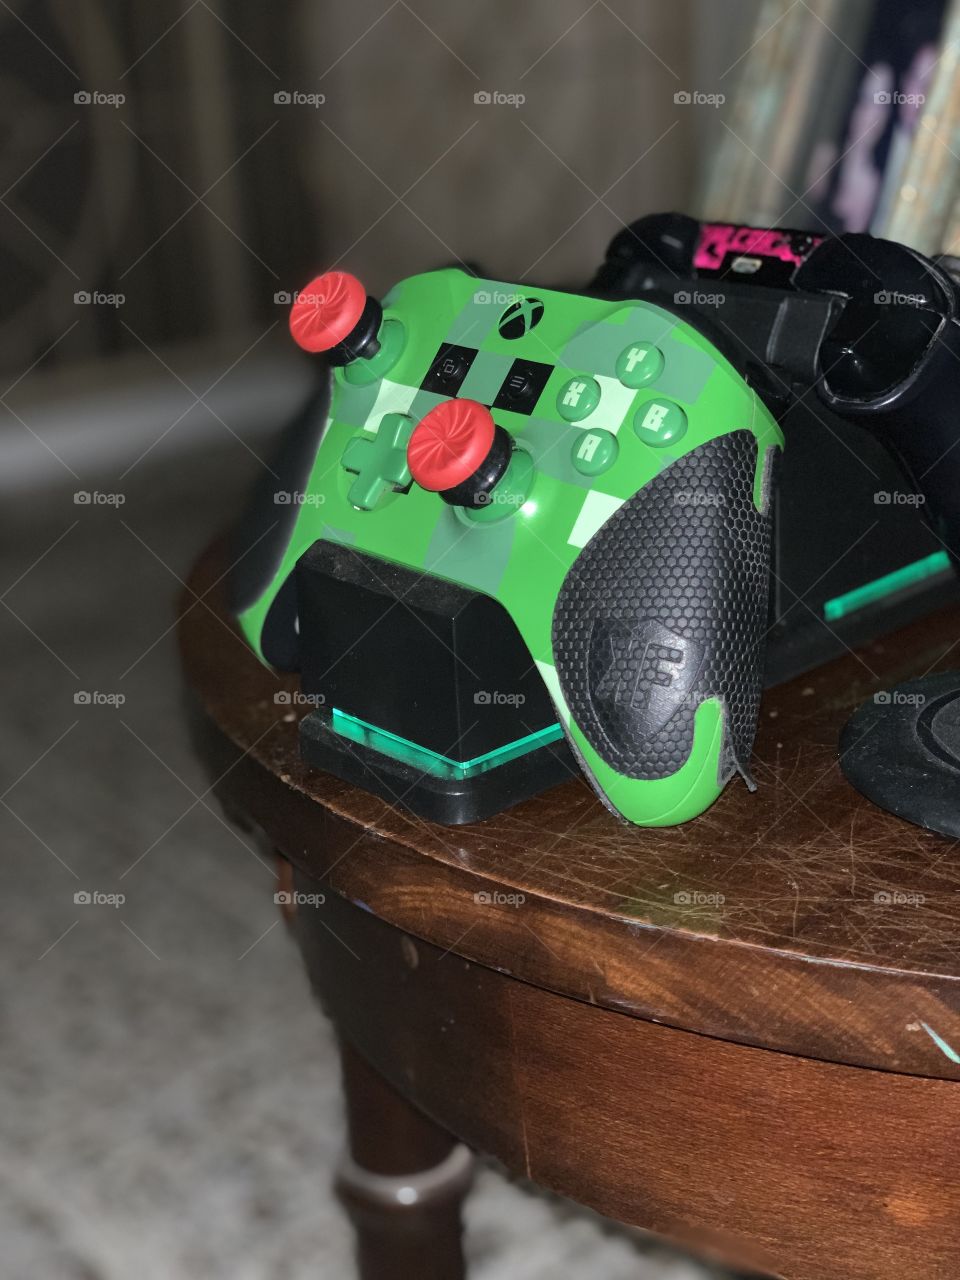 A Xbox controller